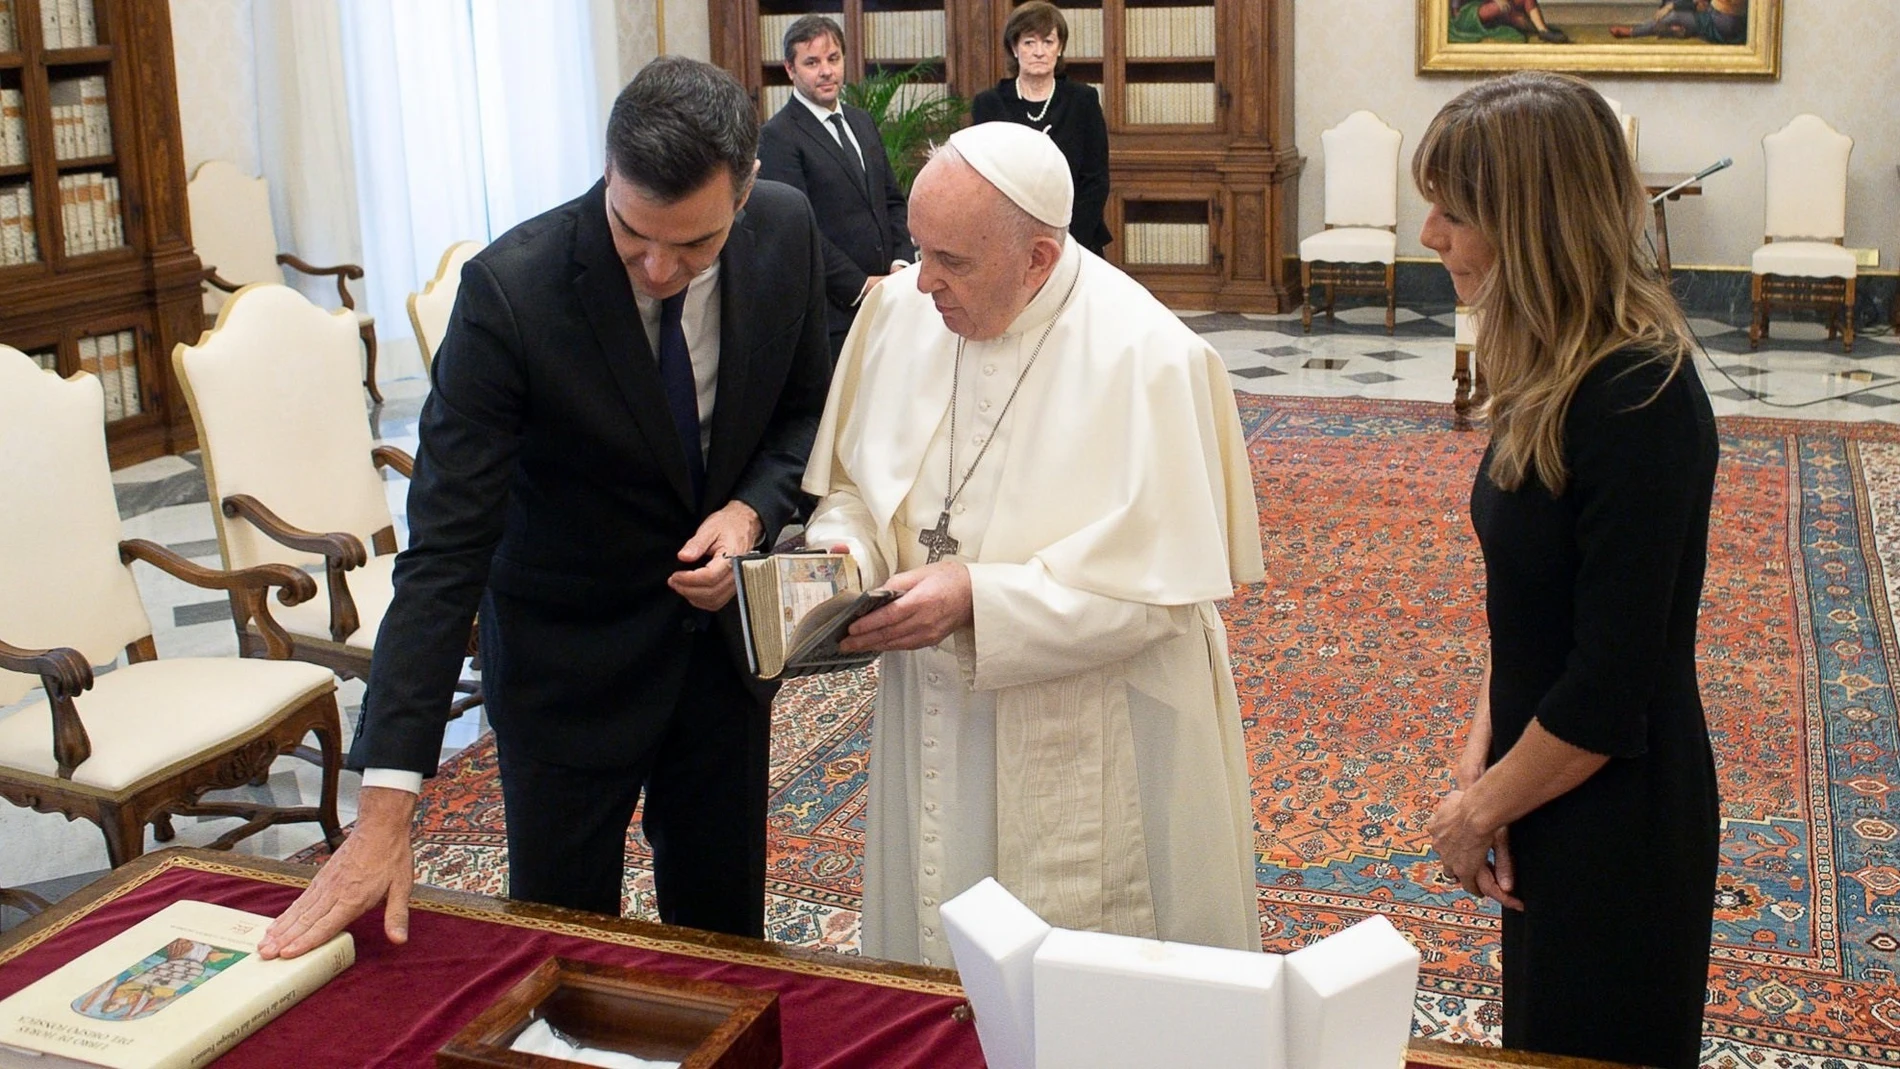 El presidente del Gobierno, Pedro Sánchez, intercambia regalos con el Papa durante su visita en el Vaticano, acompañado de su esposa Begoña Gómez